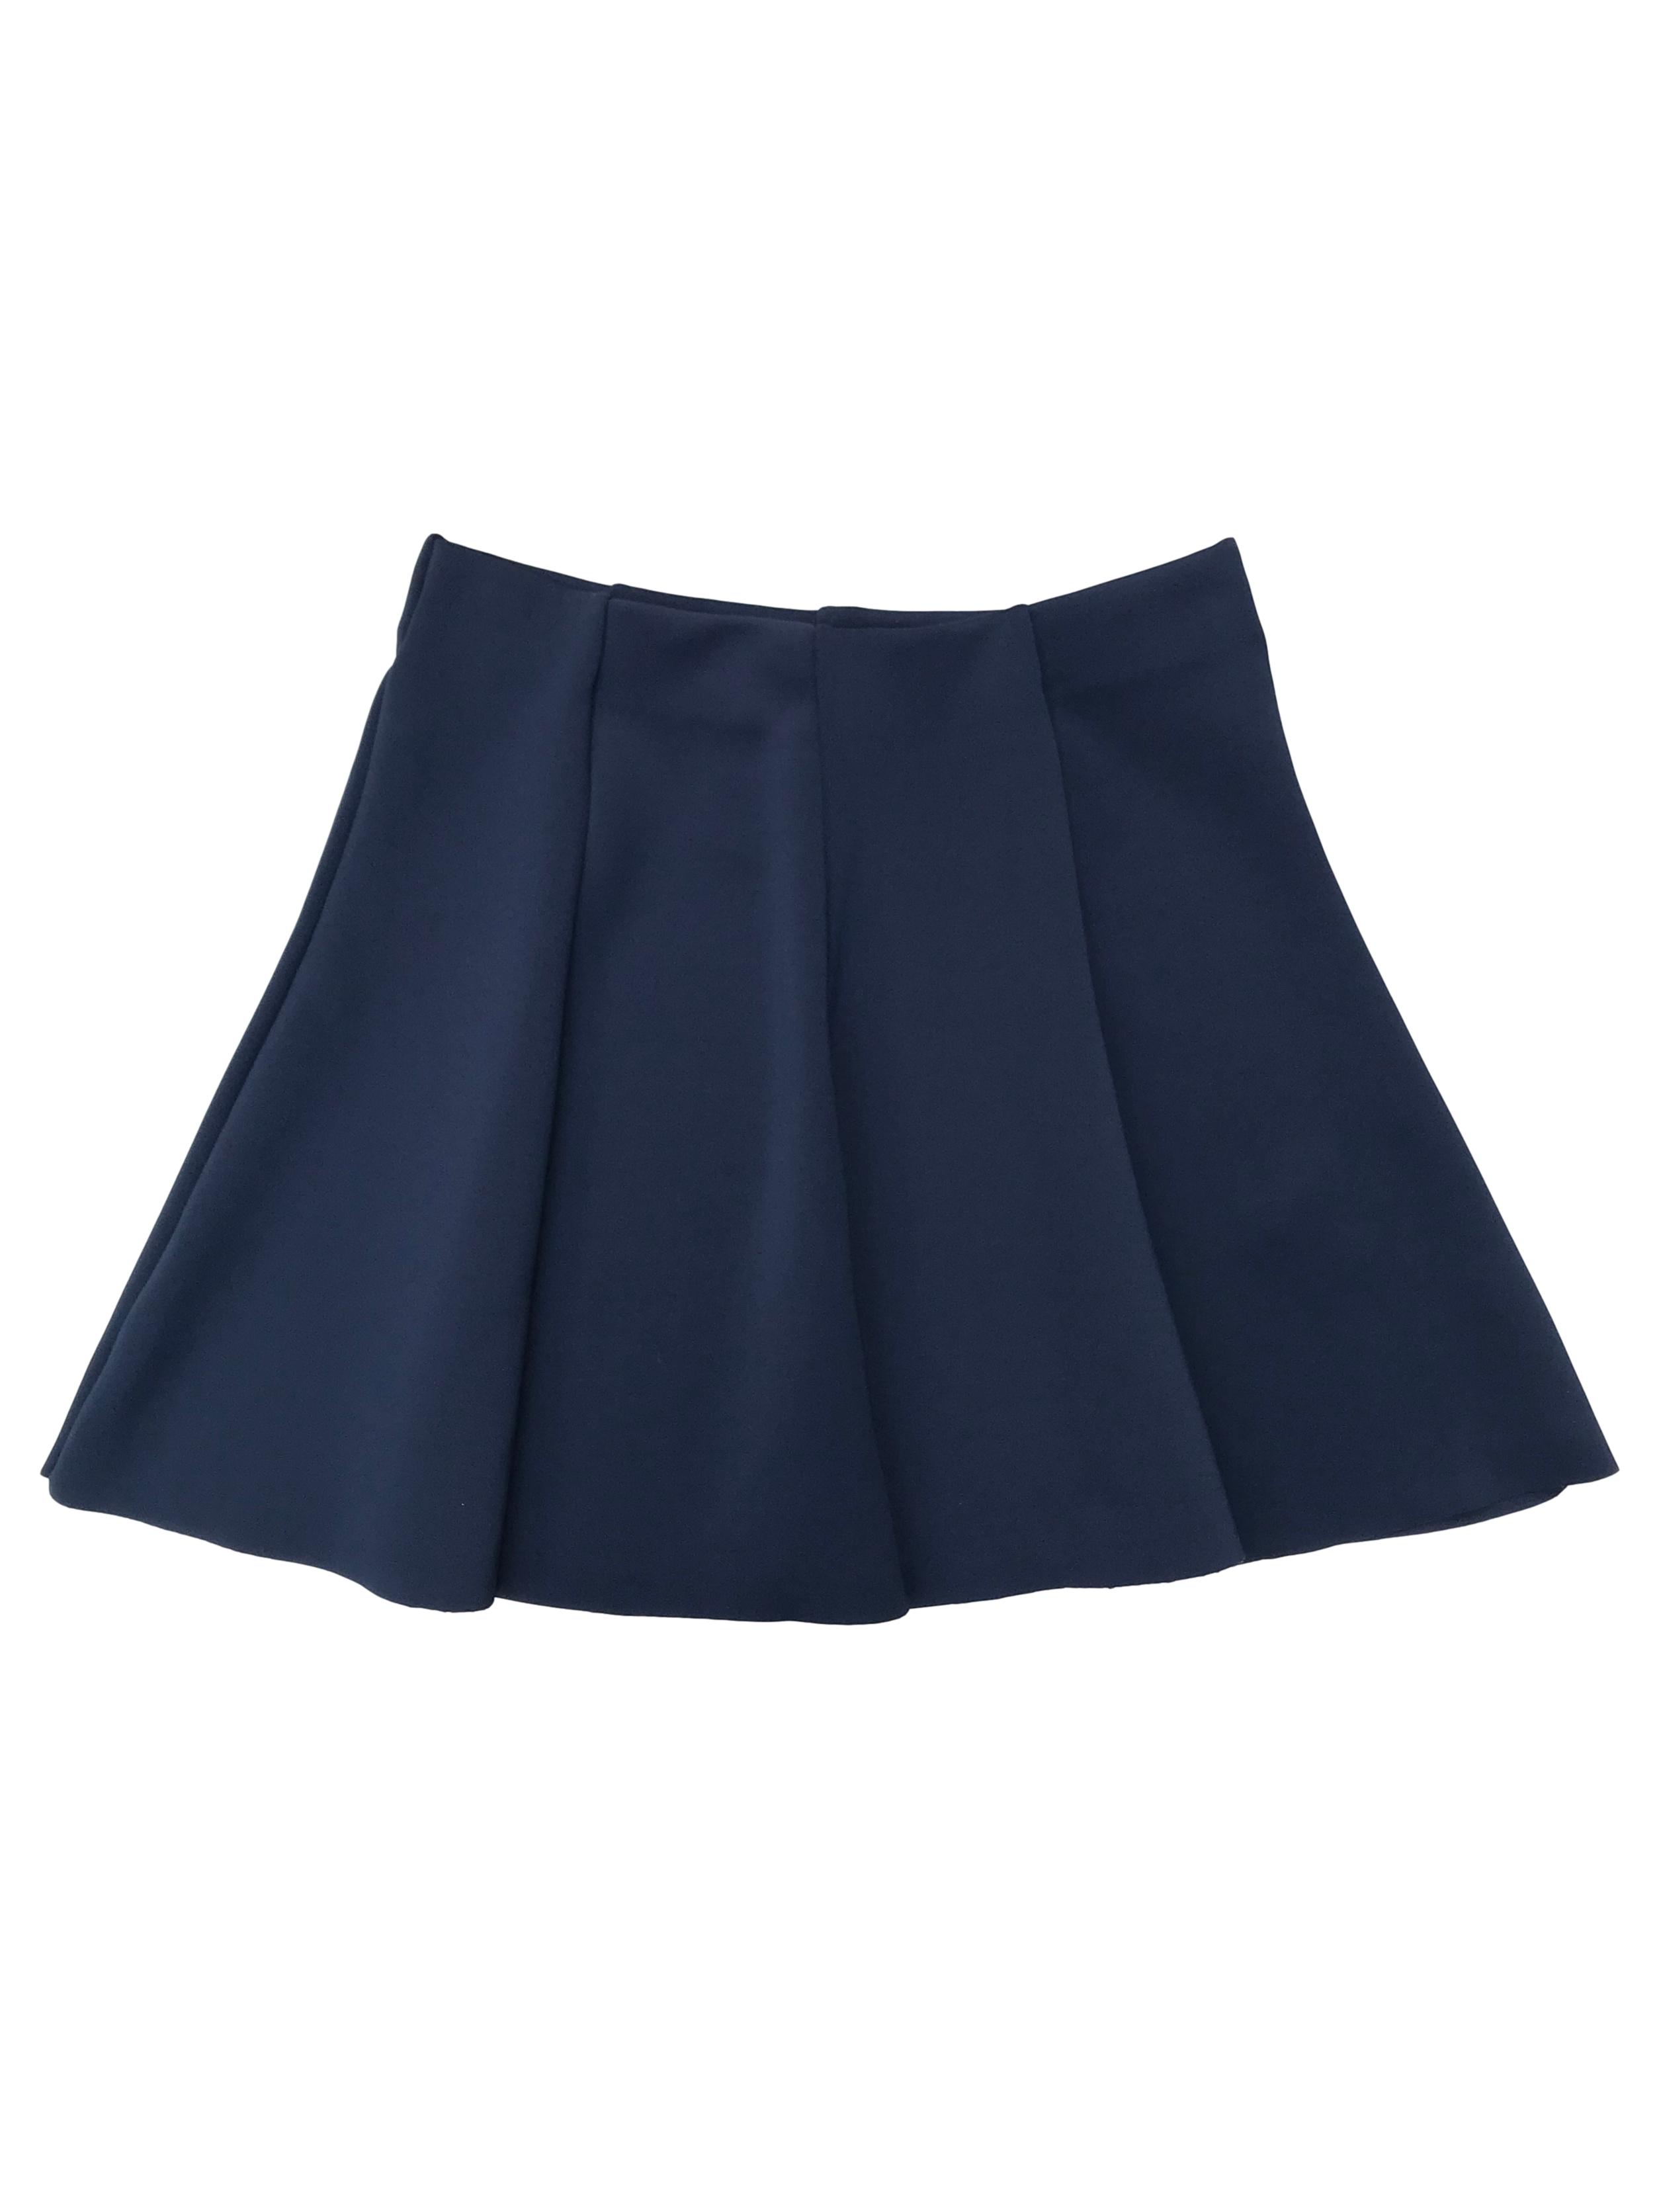 Falda azul tela tipo neopreno, corte campana, con elástico en la cintura. Pretina 68cm (sin estirar) Largo 40cm